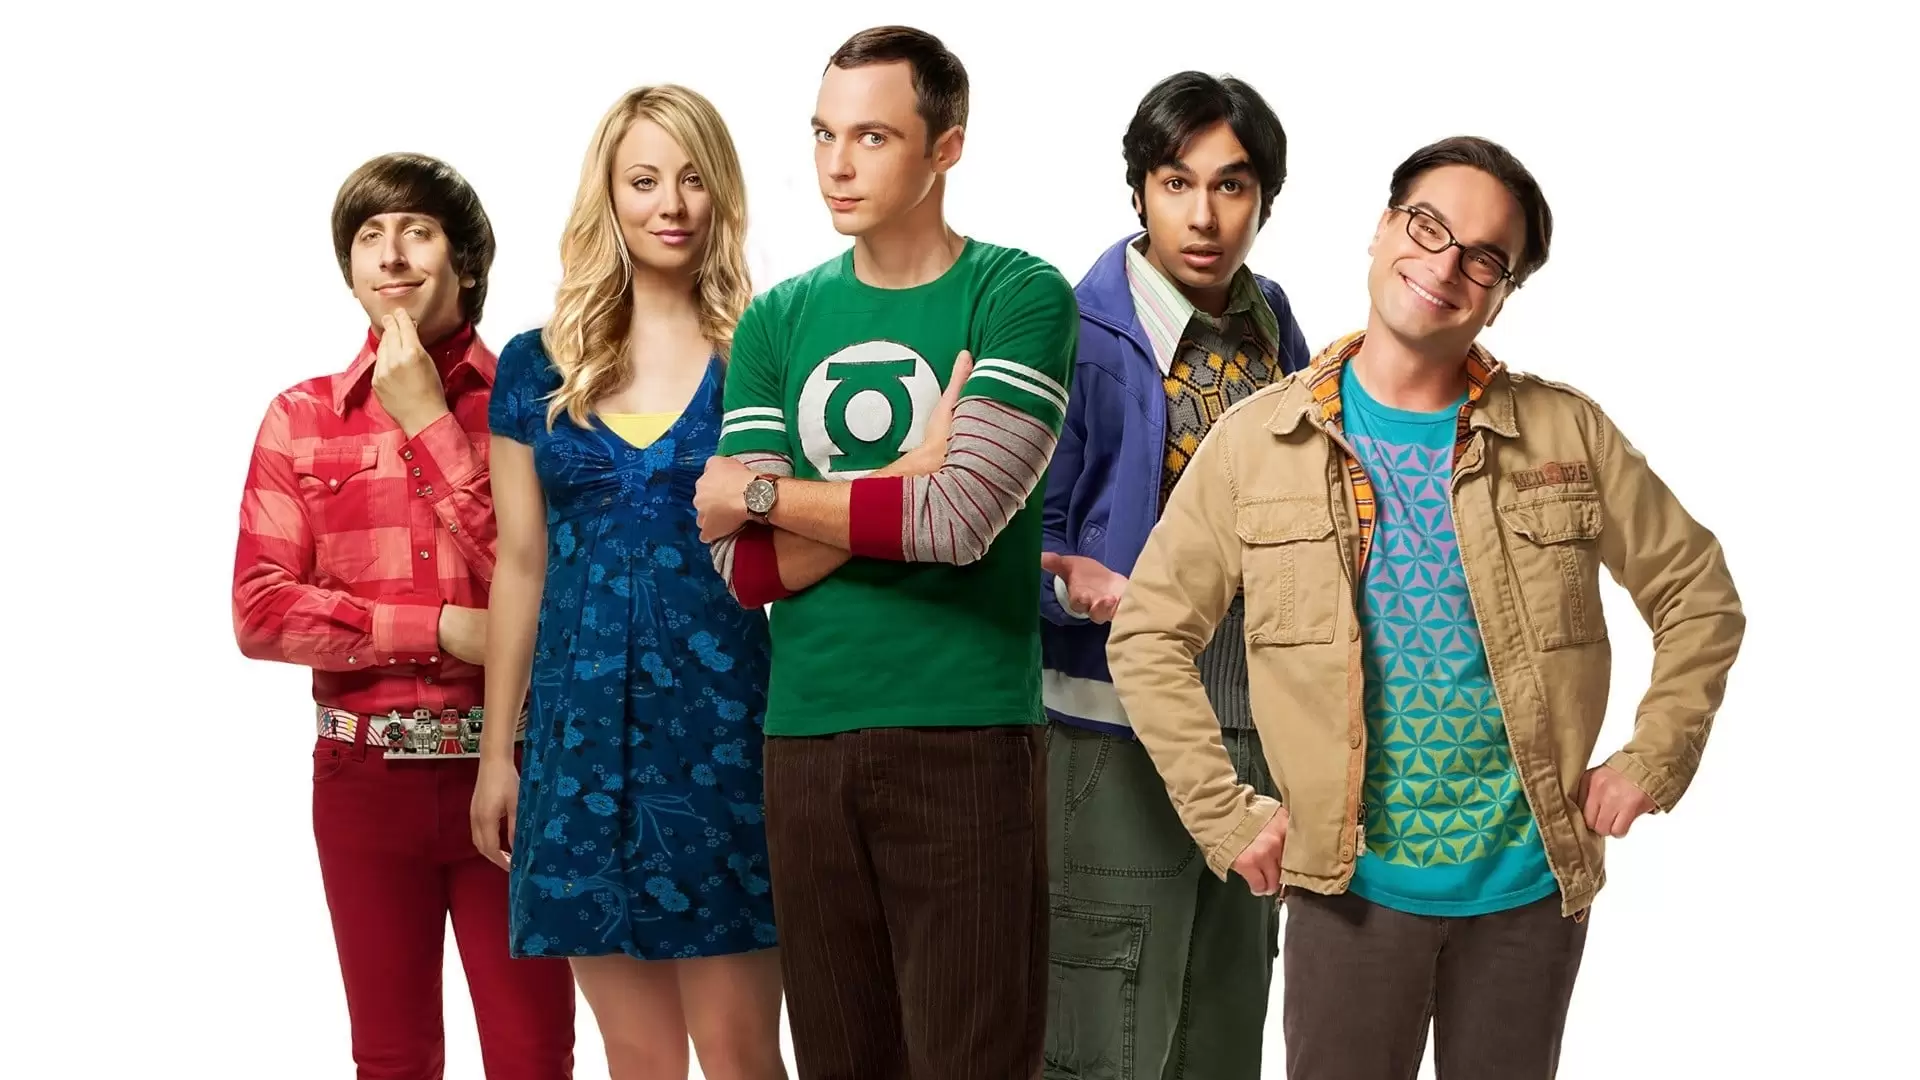 دانلود سریال The Big Bang Theory 2007 (تئوری بیگ بنگ) با زیرنویس فارسی و تماشای آنلاین